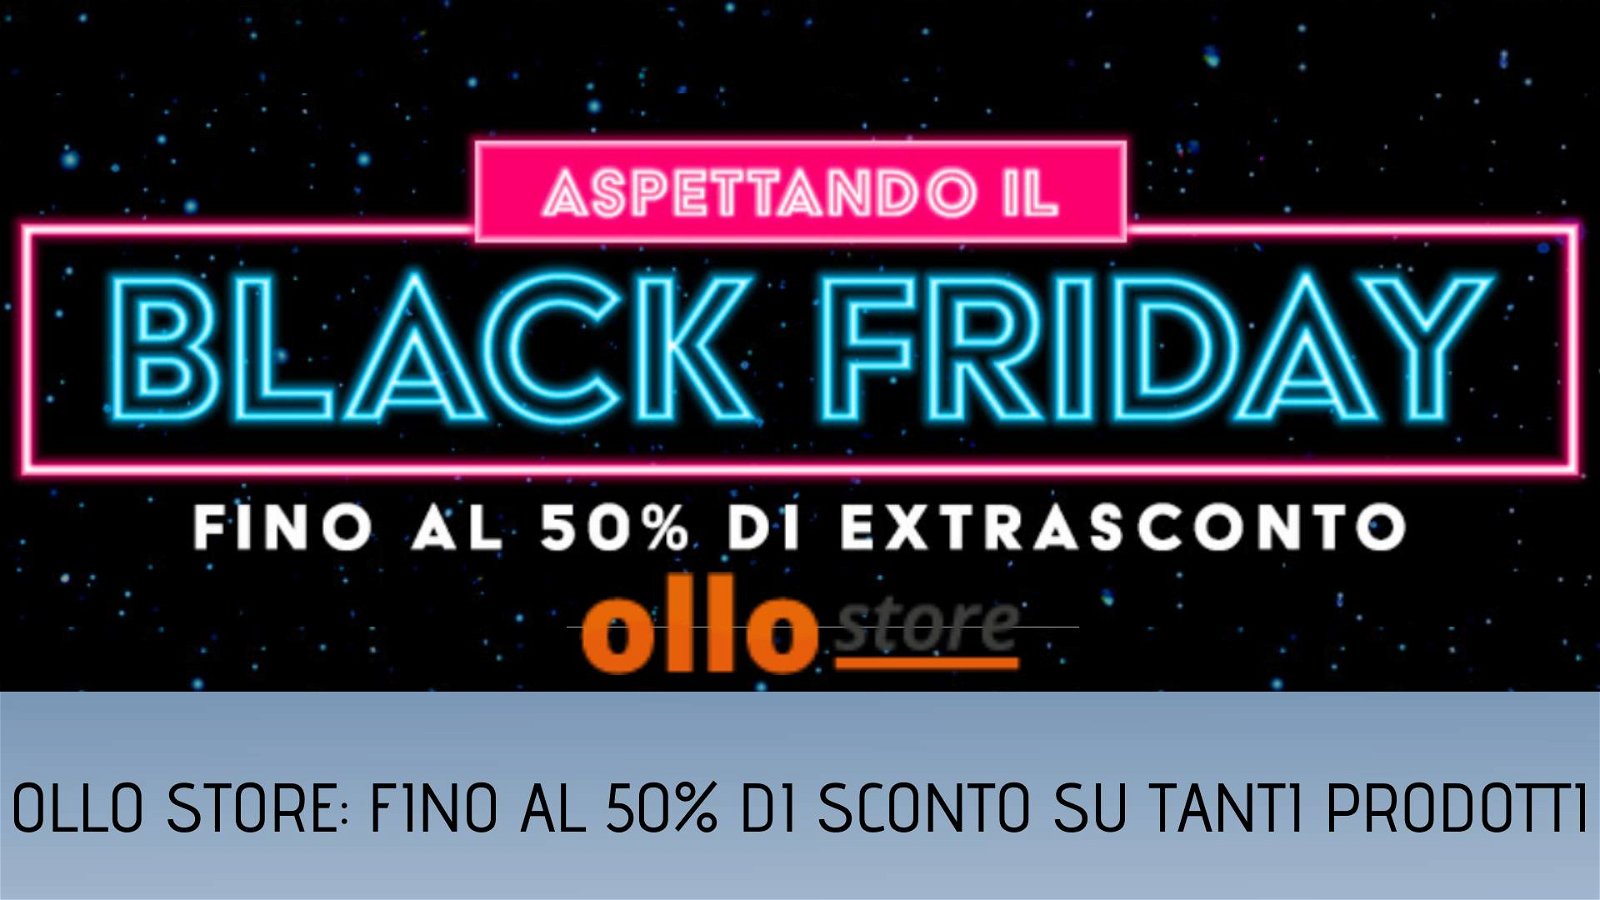 Immagine di Aspettando il Black Friday, le offerte di Ollo Store con 50% di extrasconto